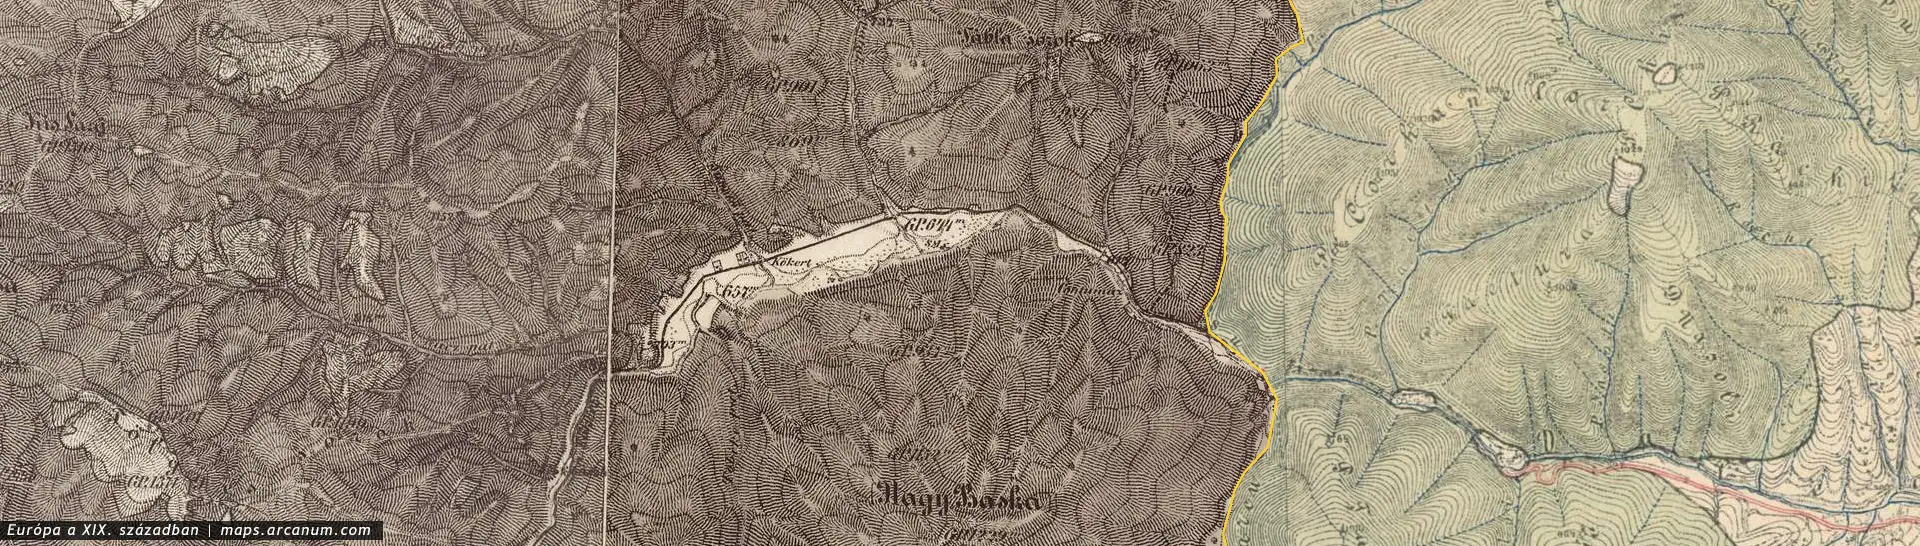 Úz-völgye a XIX. században | Forrás: maps.arcanum.com